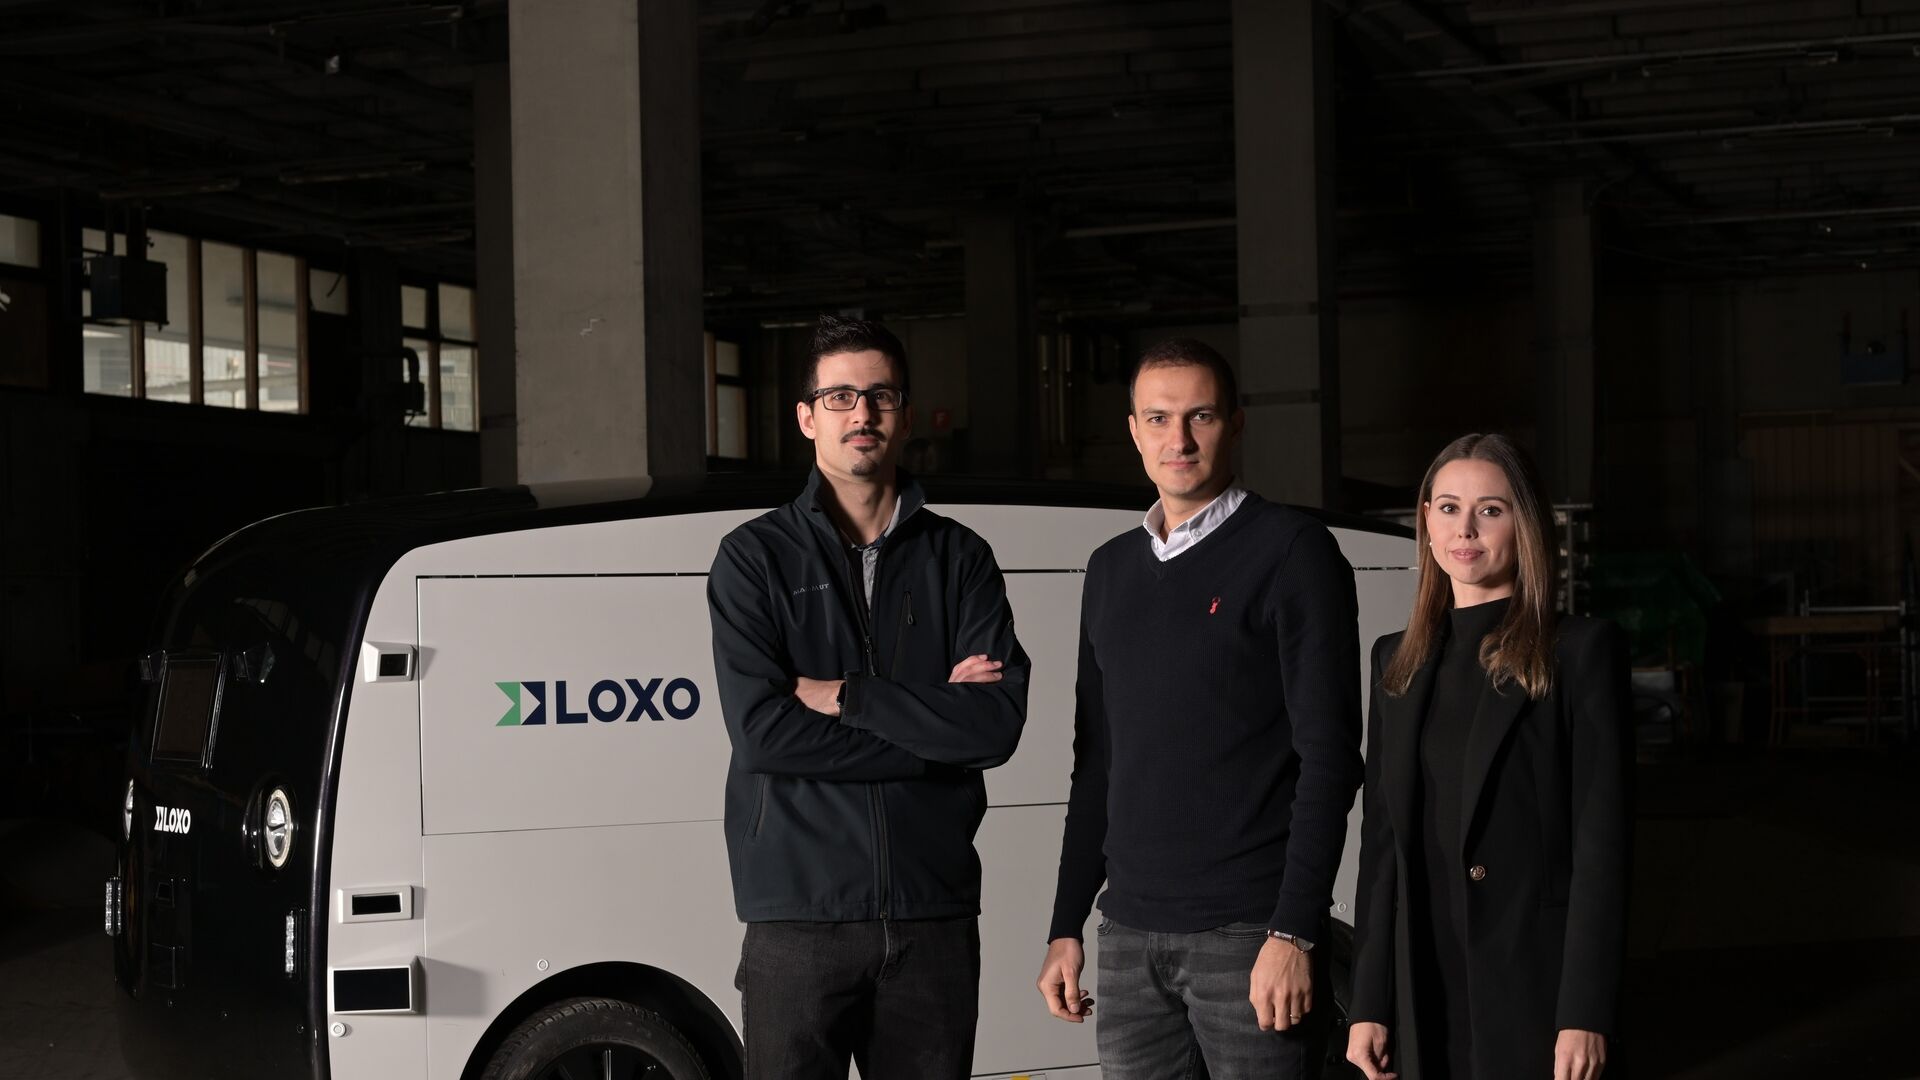 LOXO: Amin Amini, Lara Amini-Rentsch dhe Claudio Panizza, themeluesit e start-up-it LOXO në Bernë, kanë ndërtuar Alpha tërësisht në Zvicër, një furgon vetë-drejtues për dërgesa afatshkurtra.